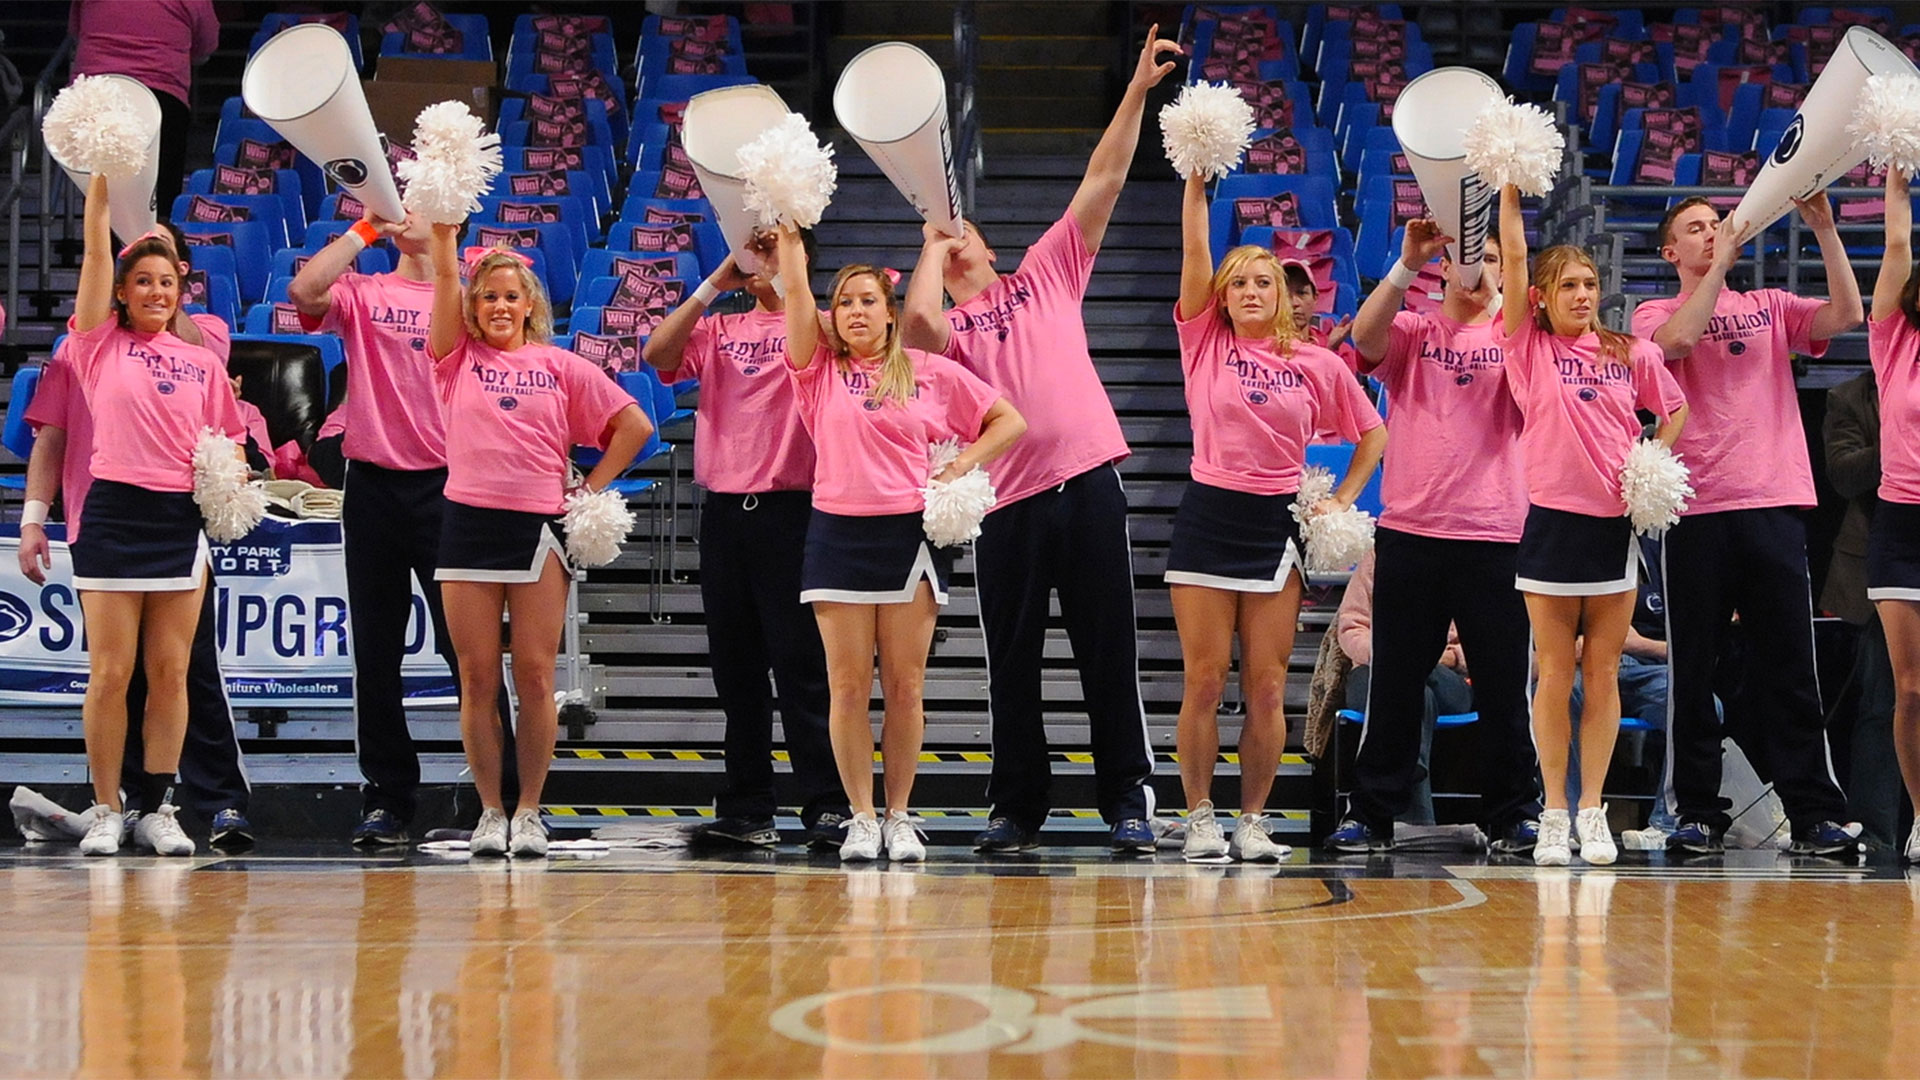 Penn State cheerleaders dressed in pink